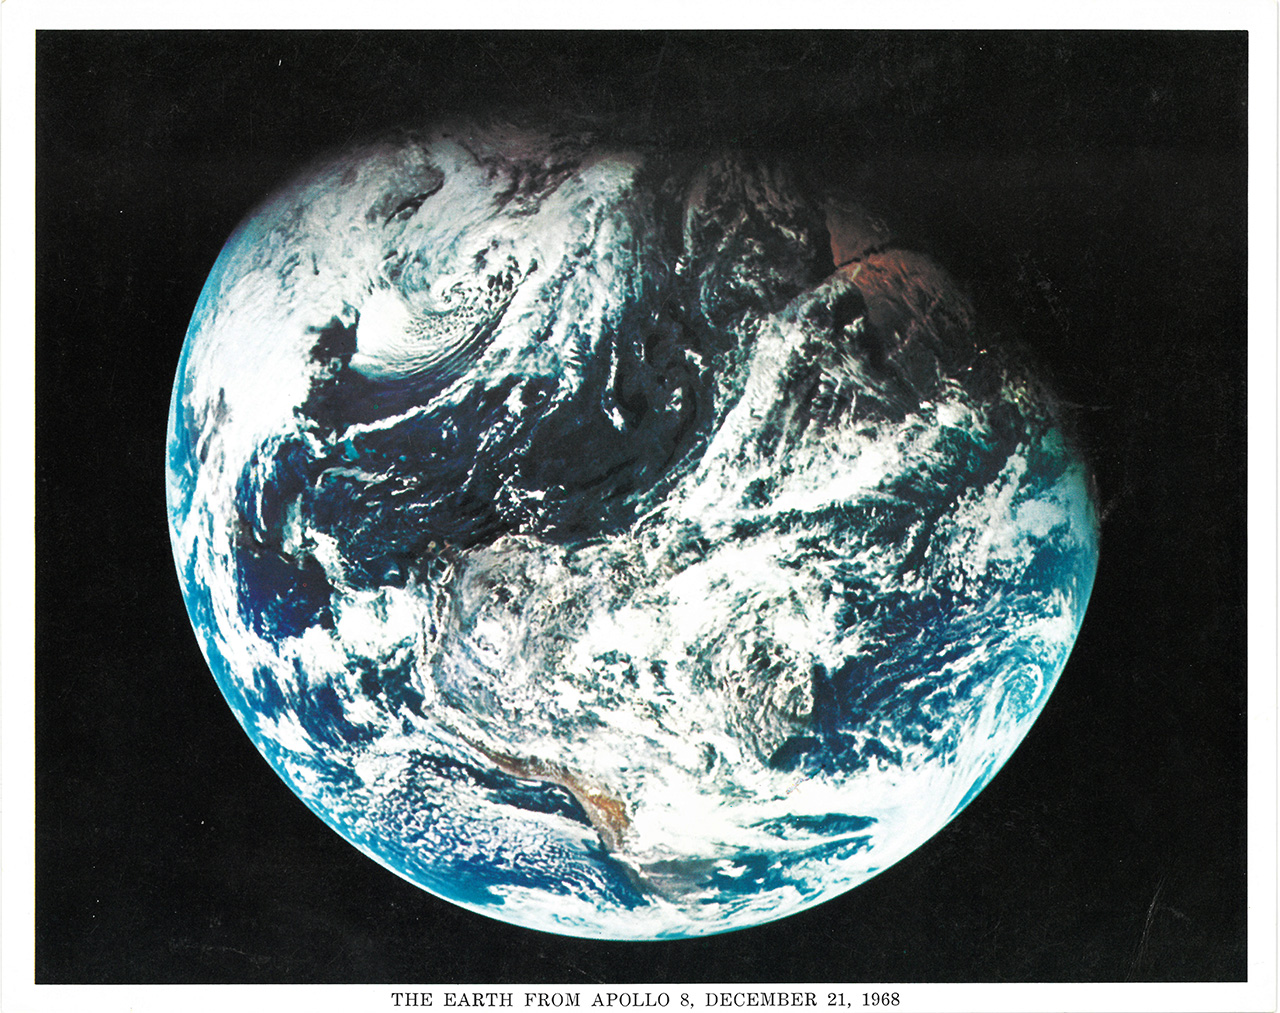 Earth, as seen from Apollo 8